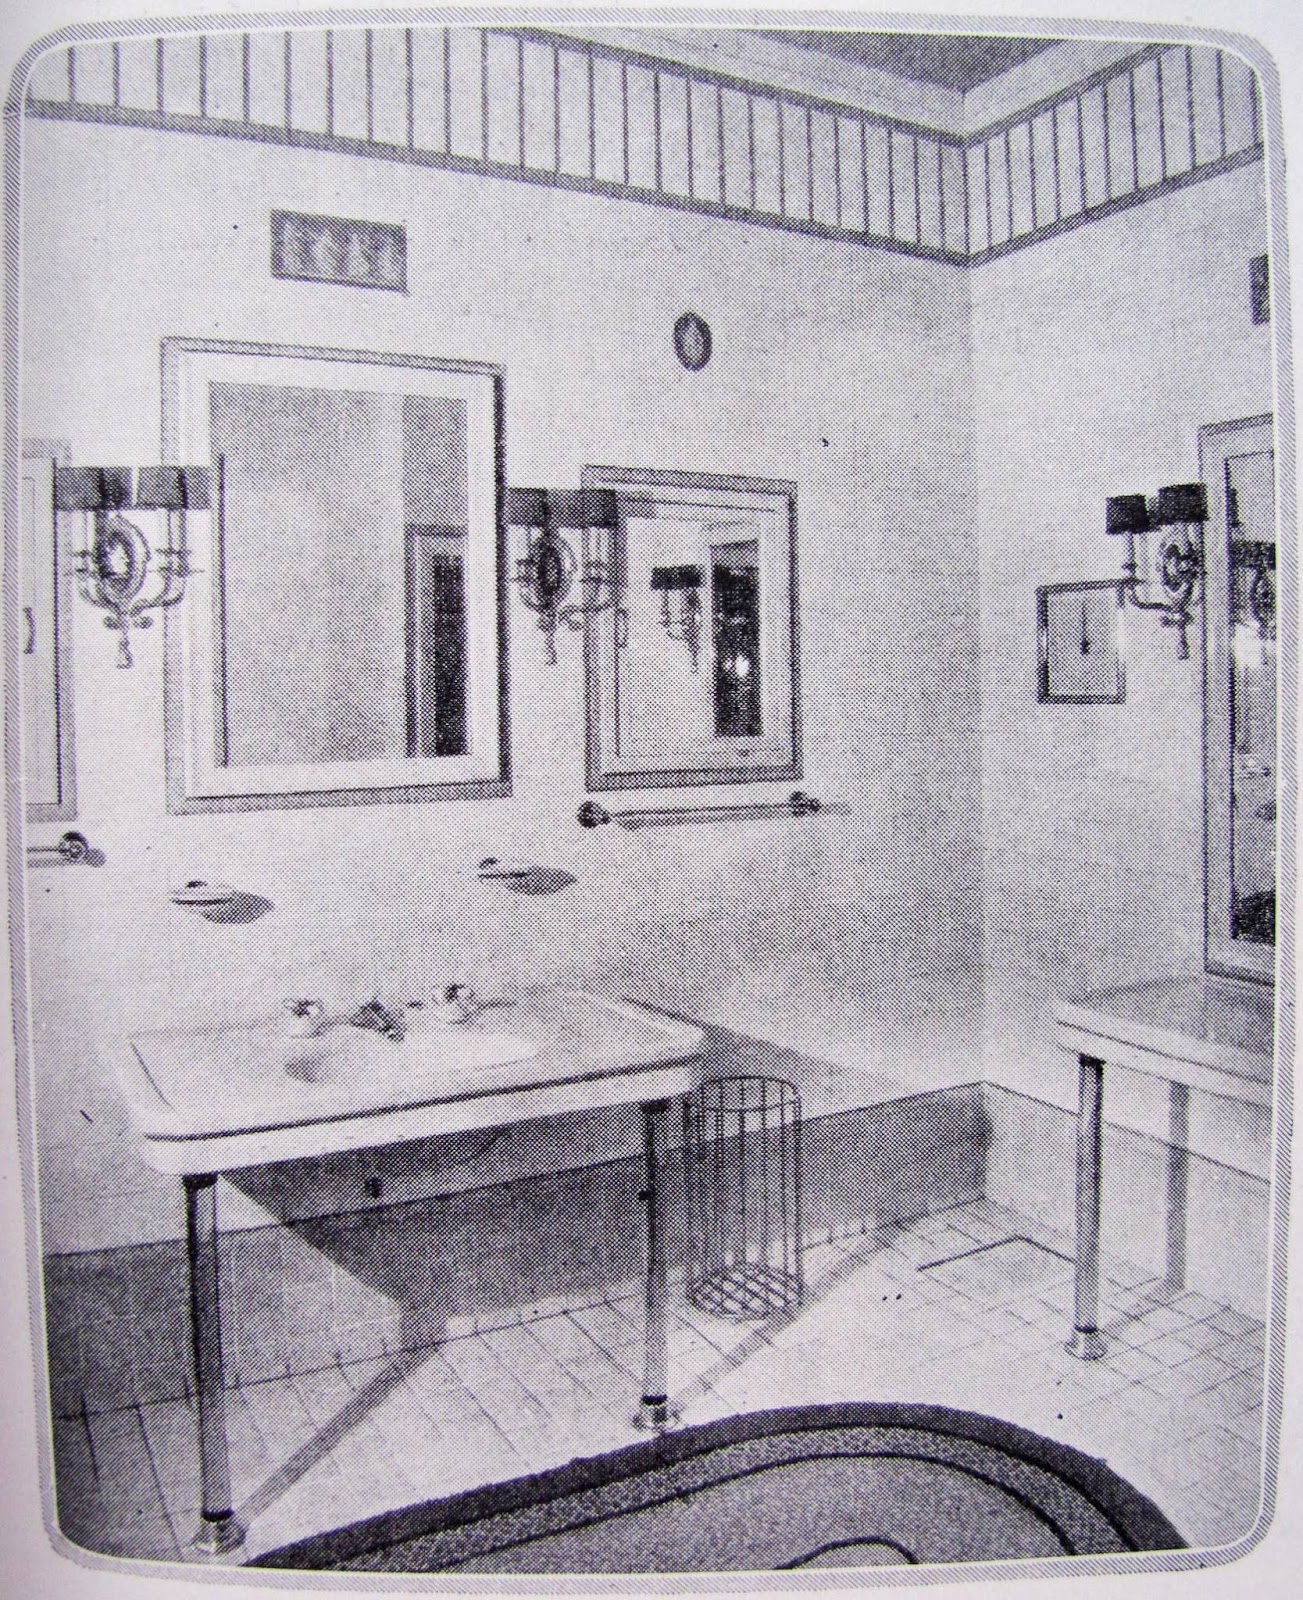 Bungalow 1920s Vintage Bathroom Styles, 1920s Bathroom Vanity